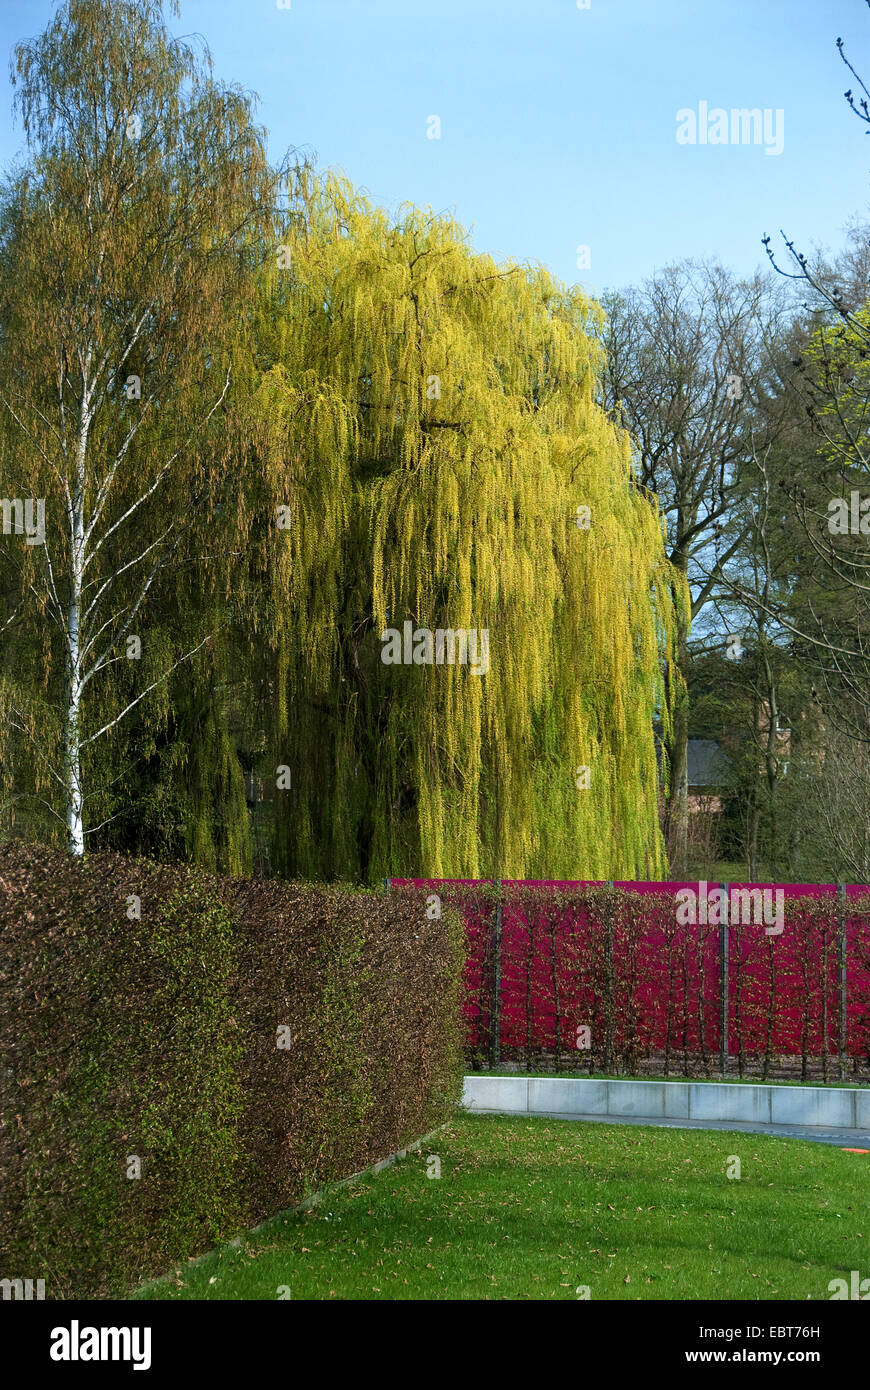 Zwerg graue Weide (Salix Alba 'Tristis', Salix Alba Tristis), Sorte Tristis in einem Park im Herbst Stockfoto